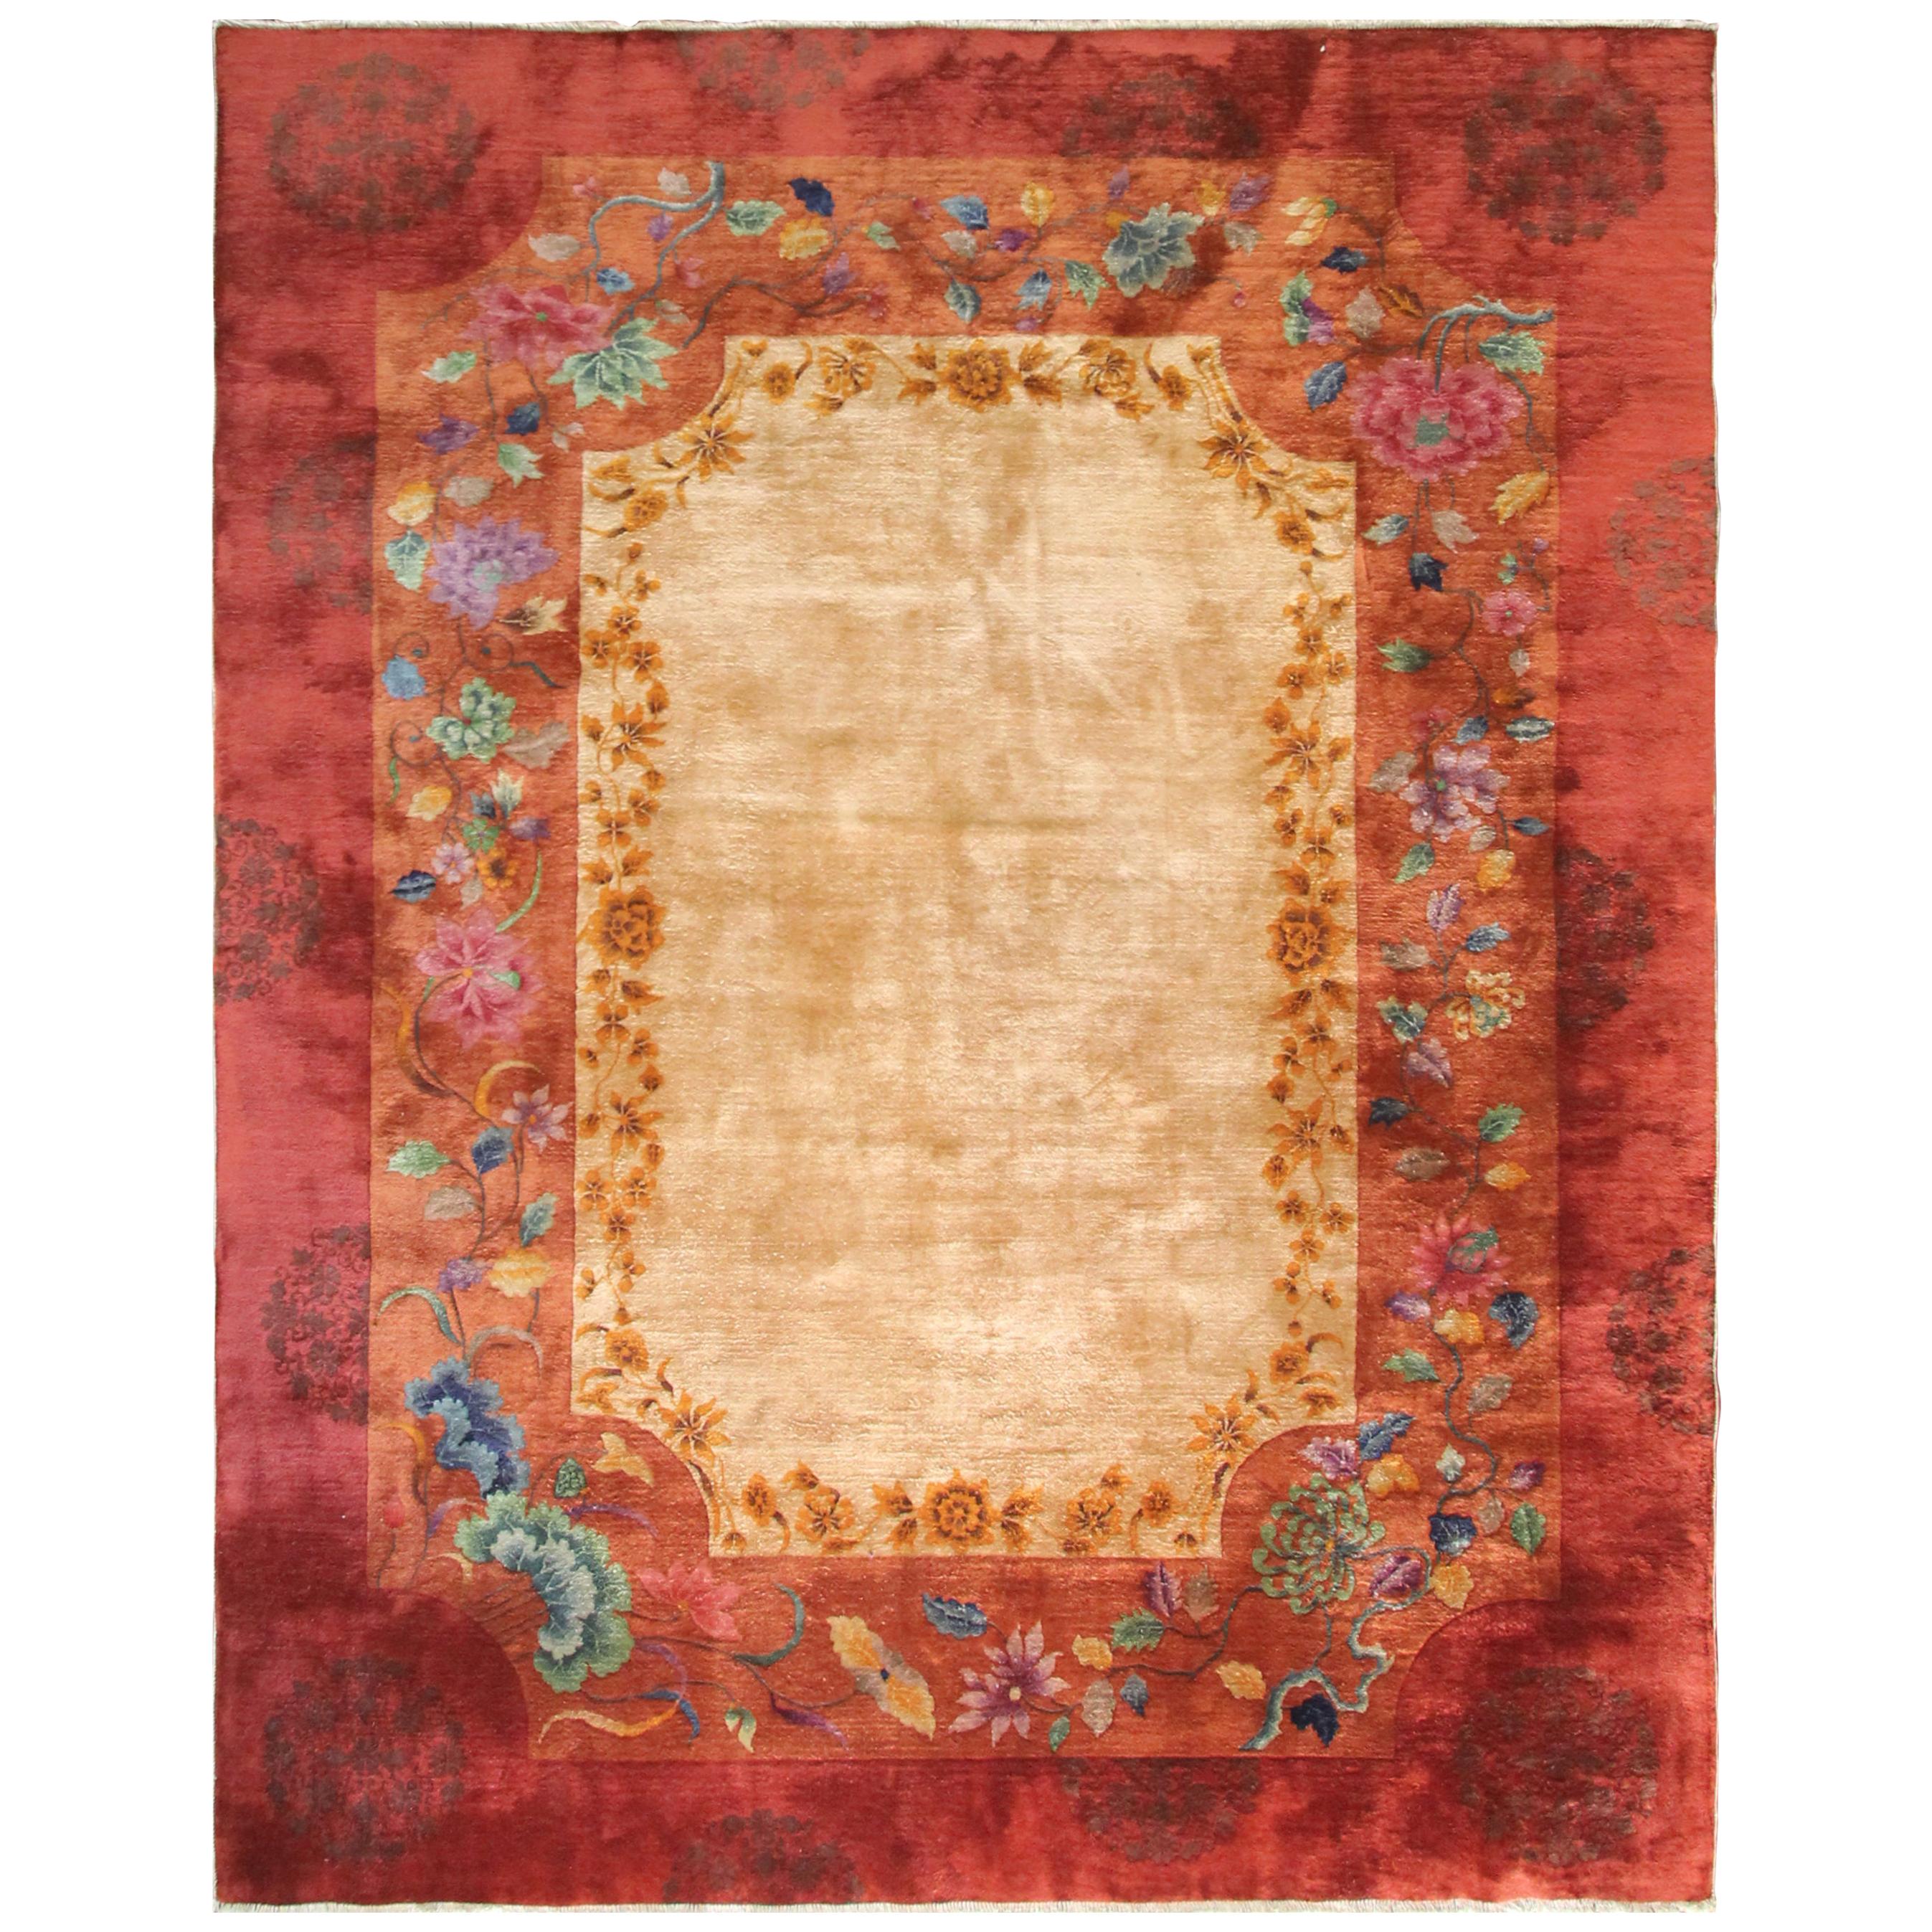 Antique Art Deco Chinese Carpet, Unusual, 8'10" x 11'6"